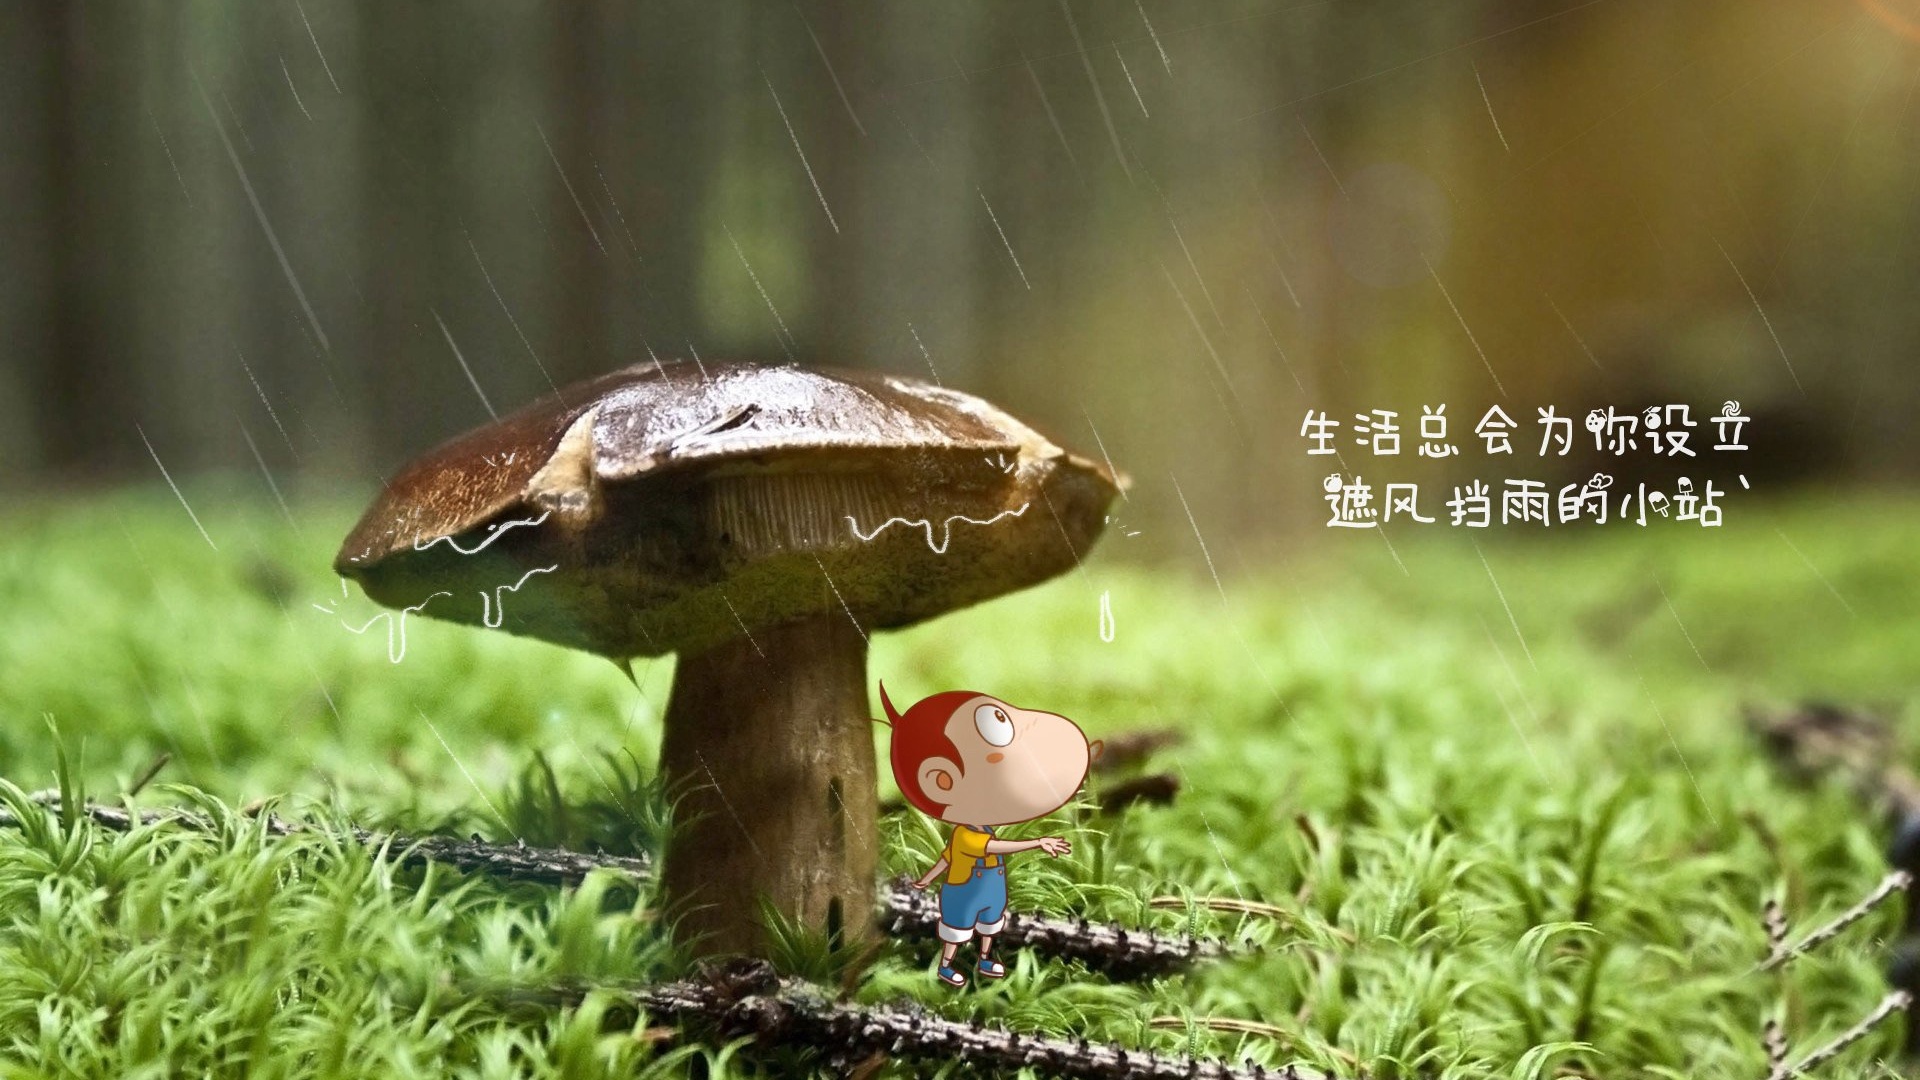 生活蘑菇遮风挡雨小站文字控壁纸